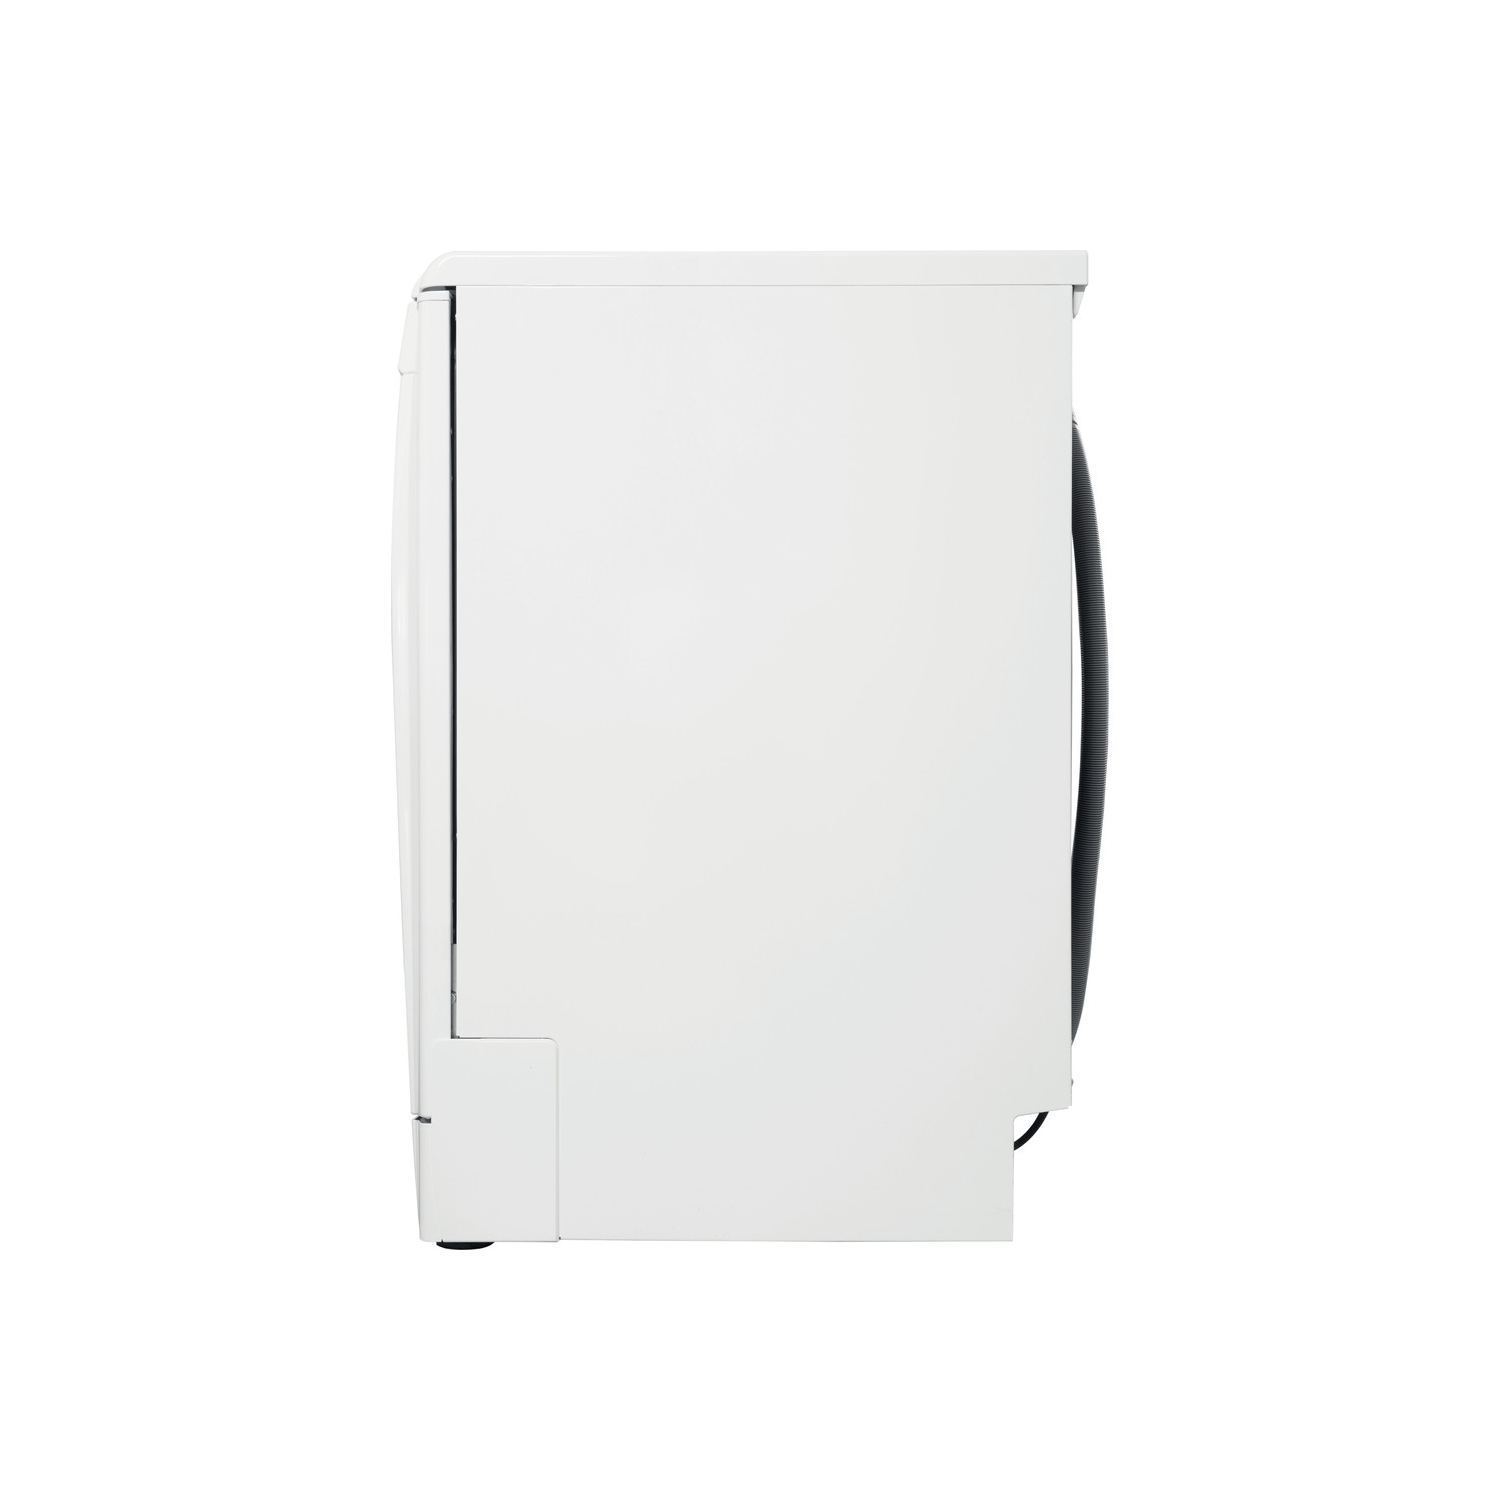 Indesit DFC2B16UK Full Size Dishwasher - White - 13 Place Settings - 7